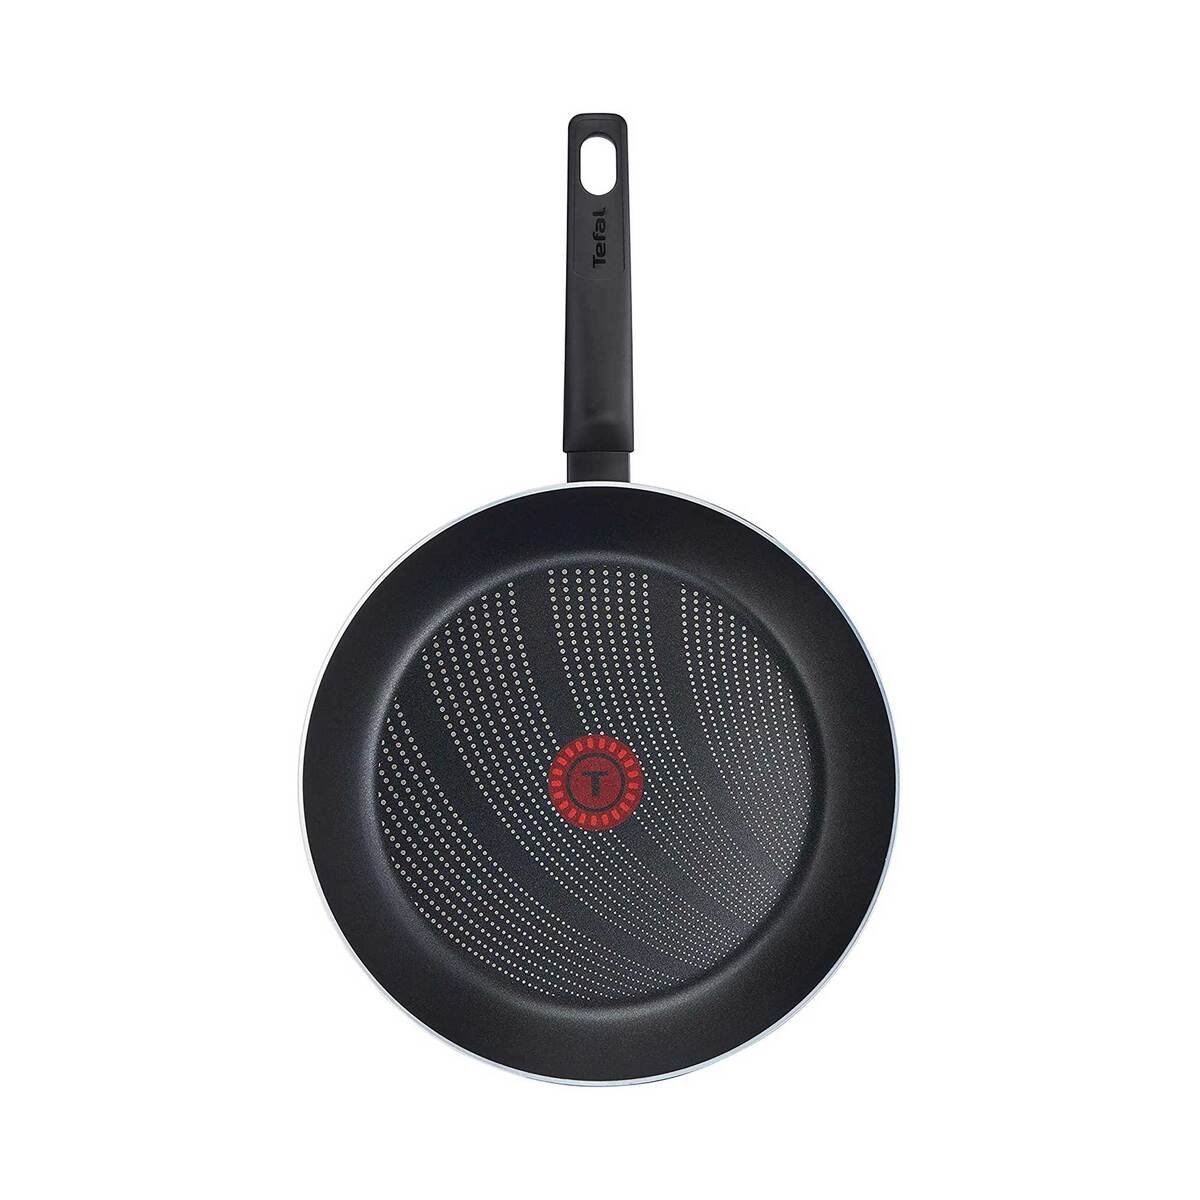 Tefal Cook'N'Clean Non-Stick Fry Pan, 32 cm, B2990883